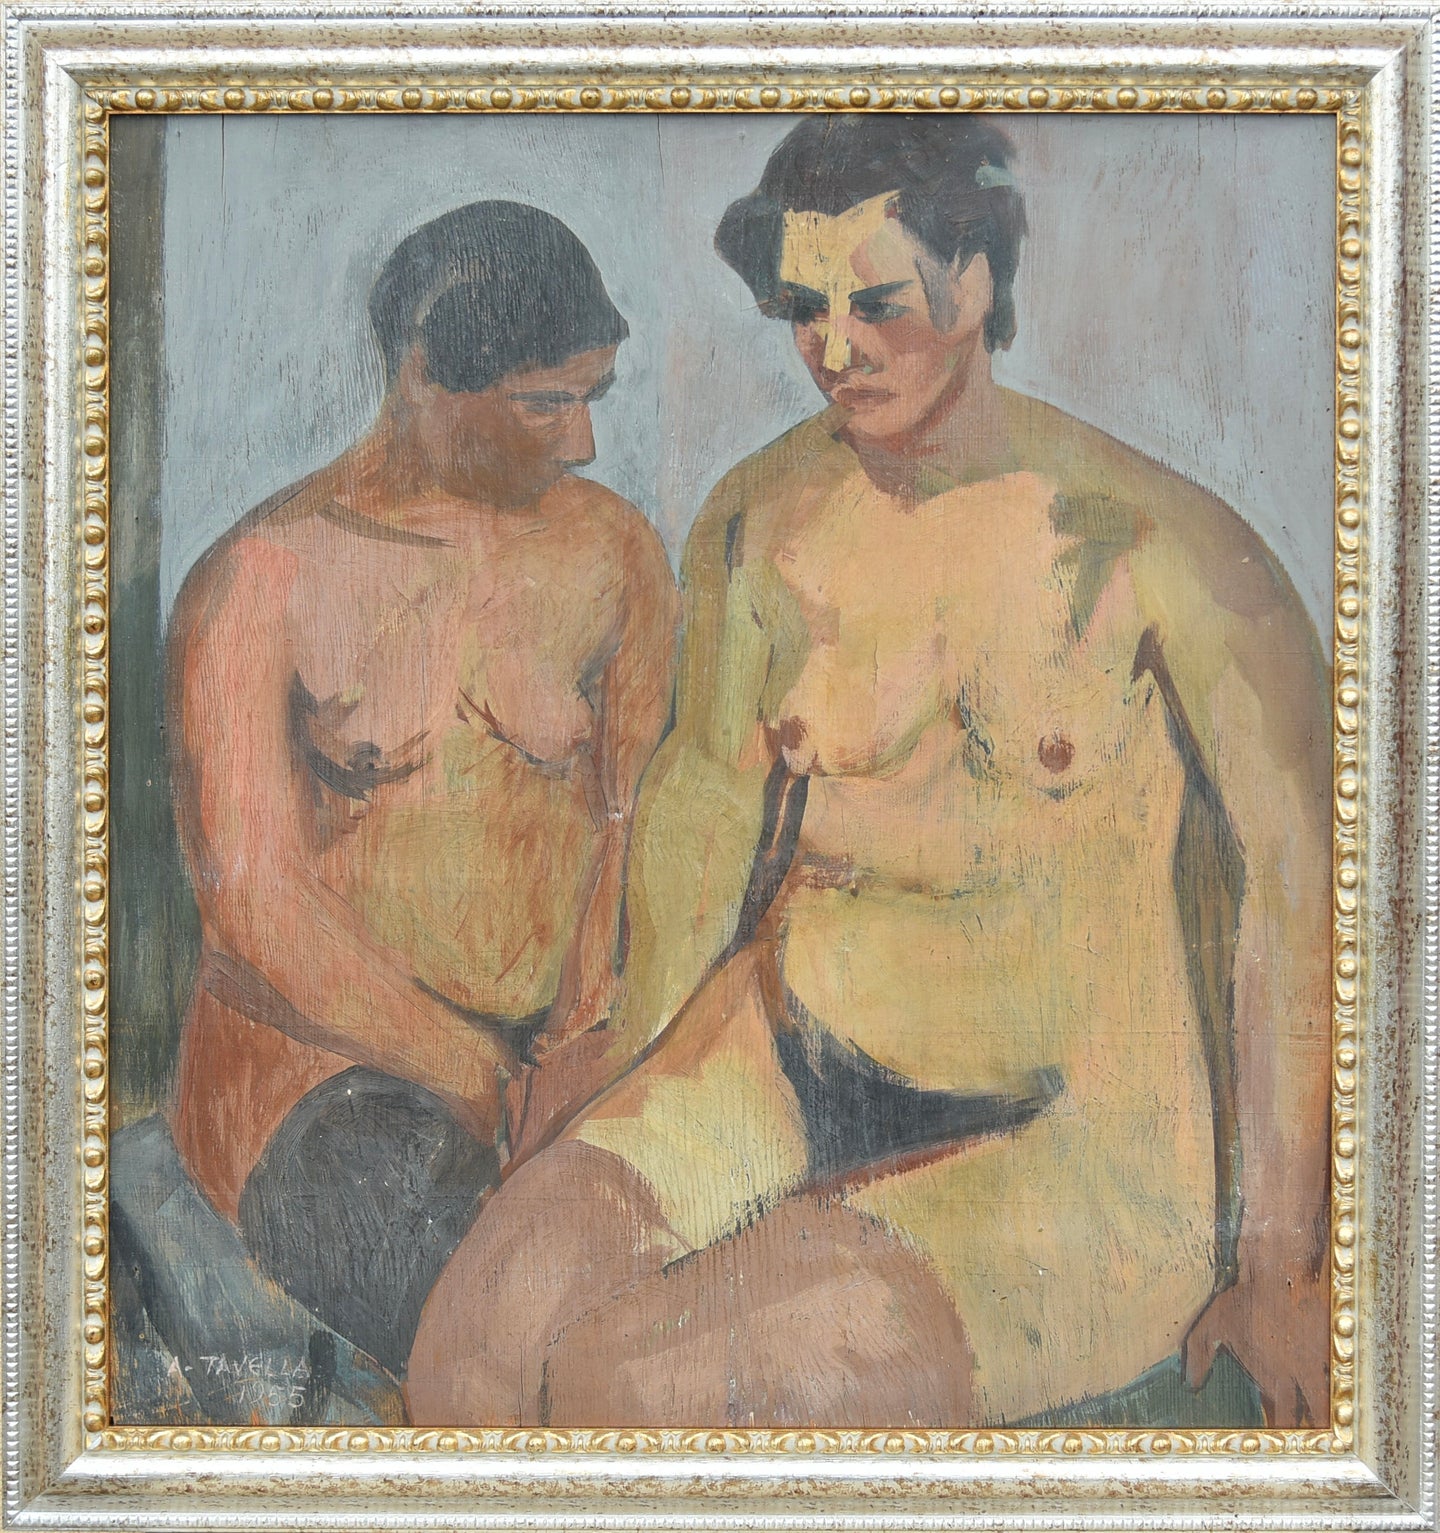 Aldo Tavella, Composizione con Due Nudi, 1954-1955